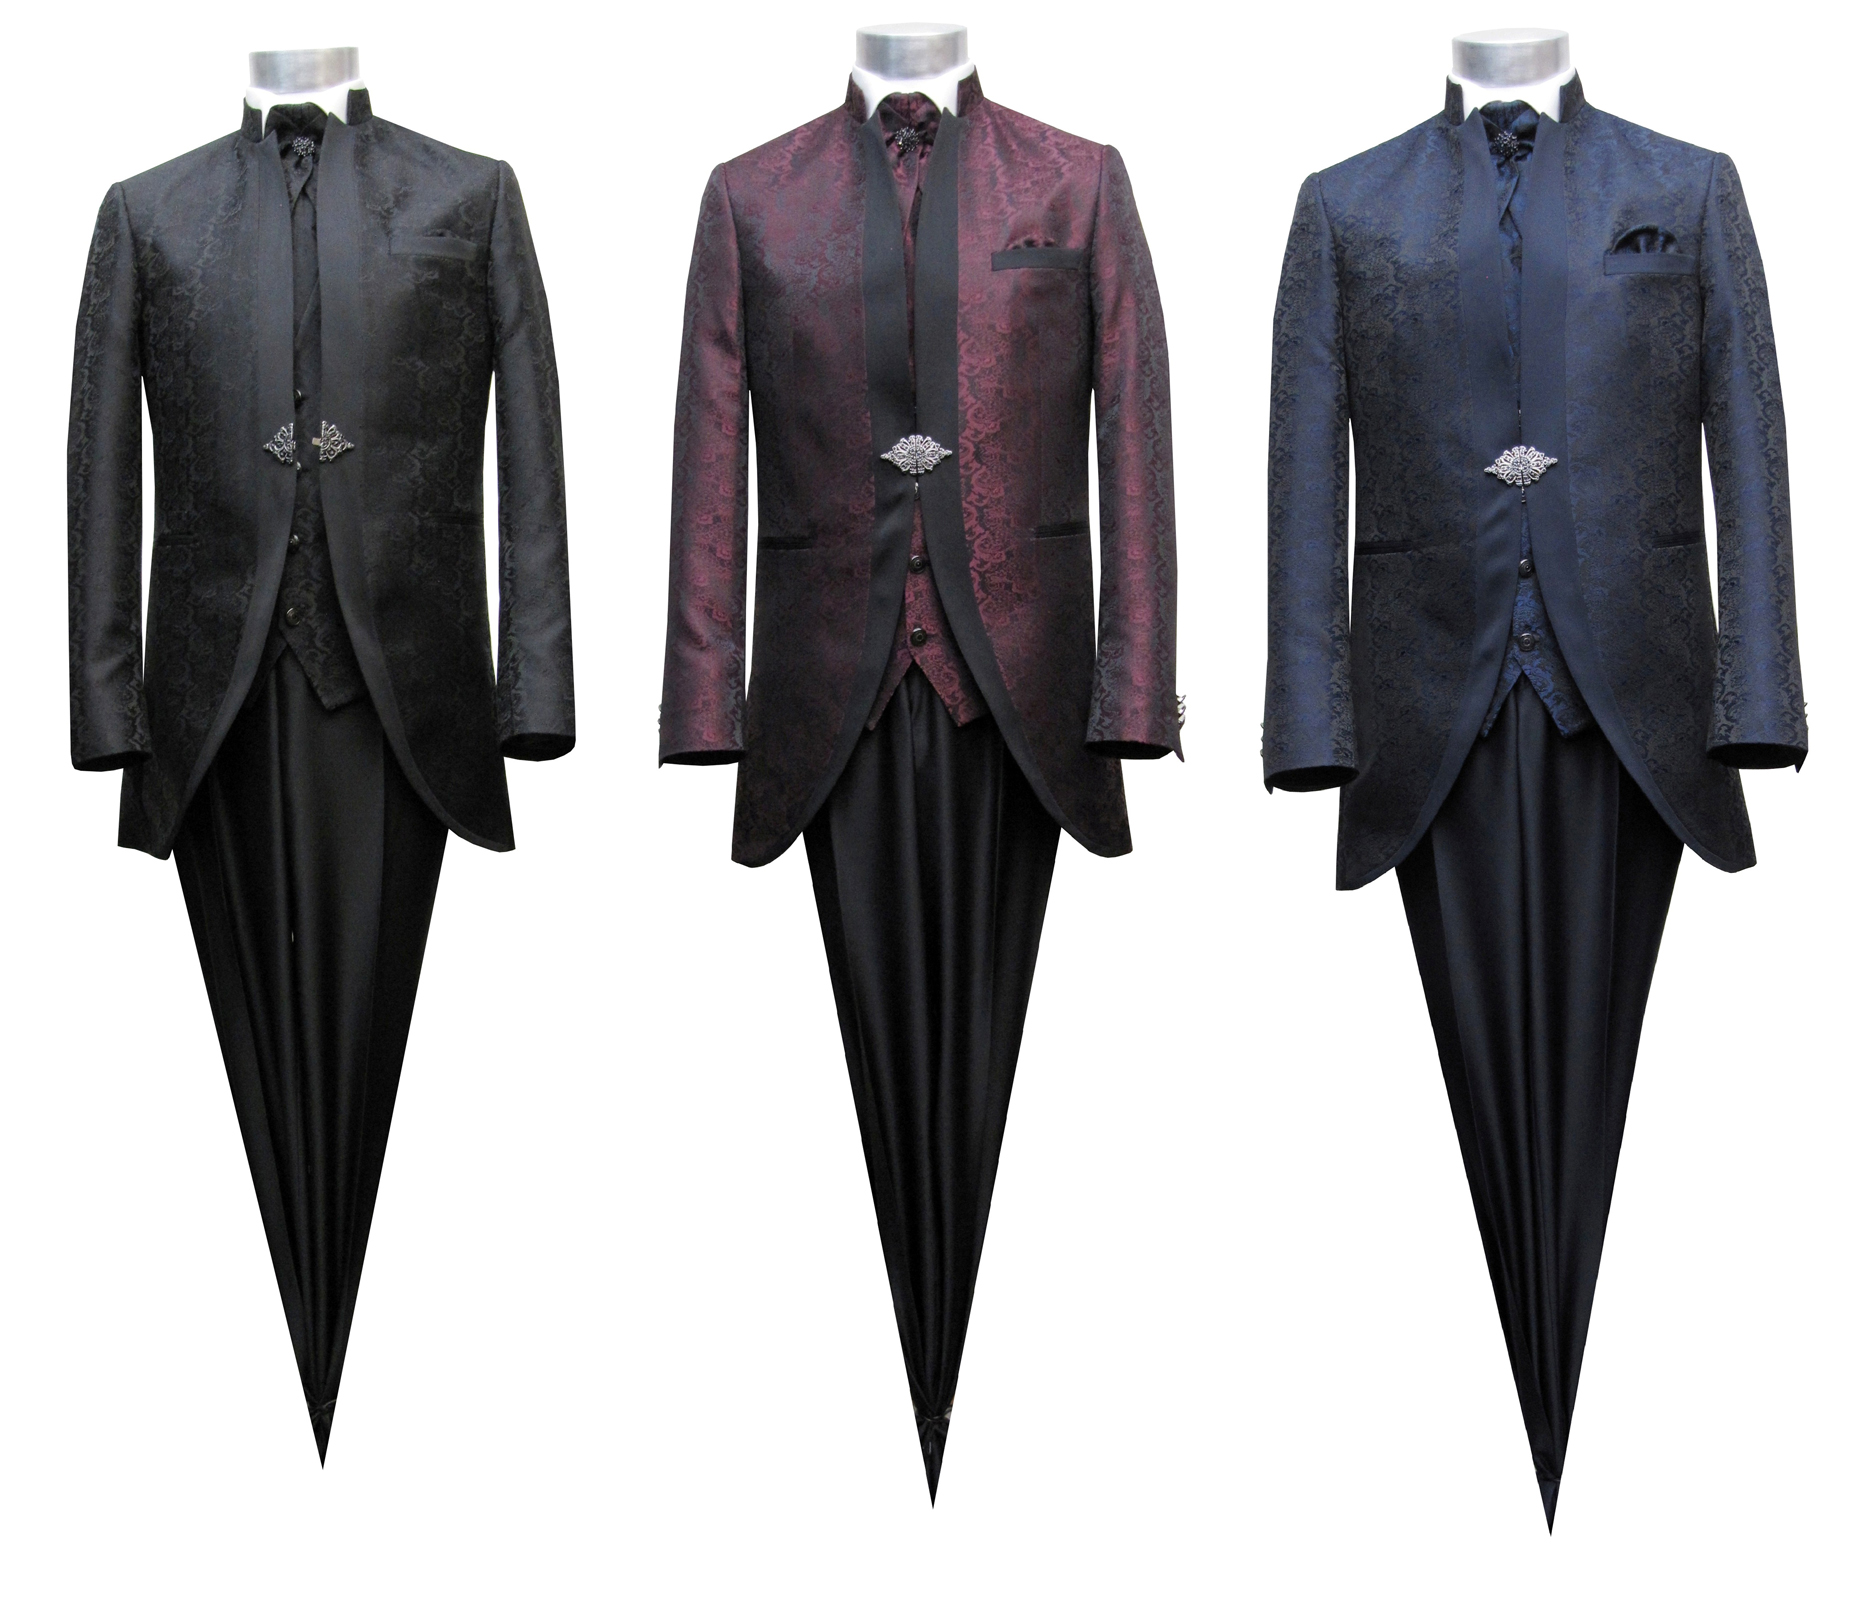 Mao Stehkragen Herrenanzug Cutaway Elegante 6 teiler Anzug, Schwarz, Dunkel...